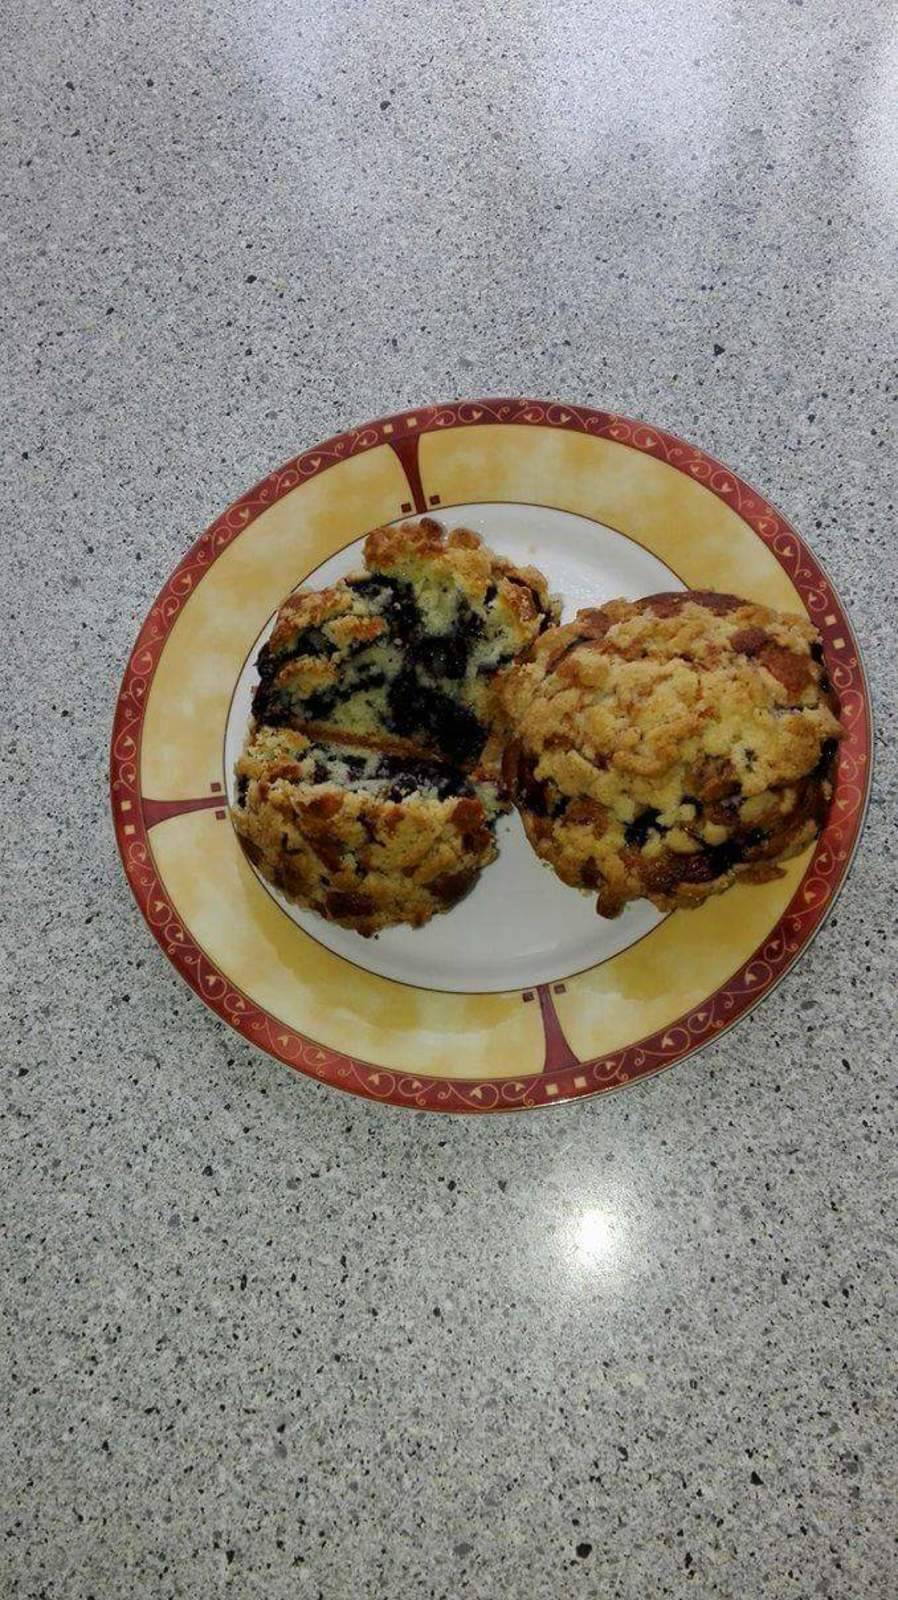 Heidelbeer Muffins mit Crumble